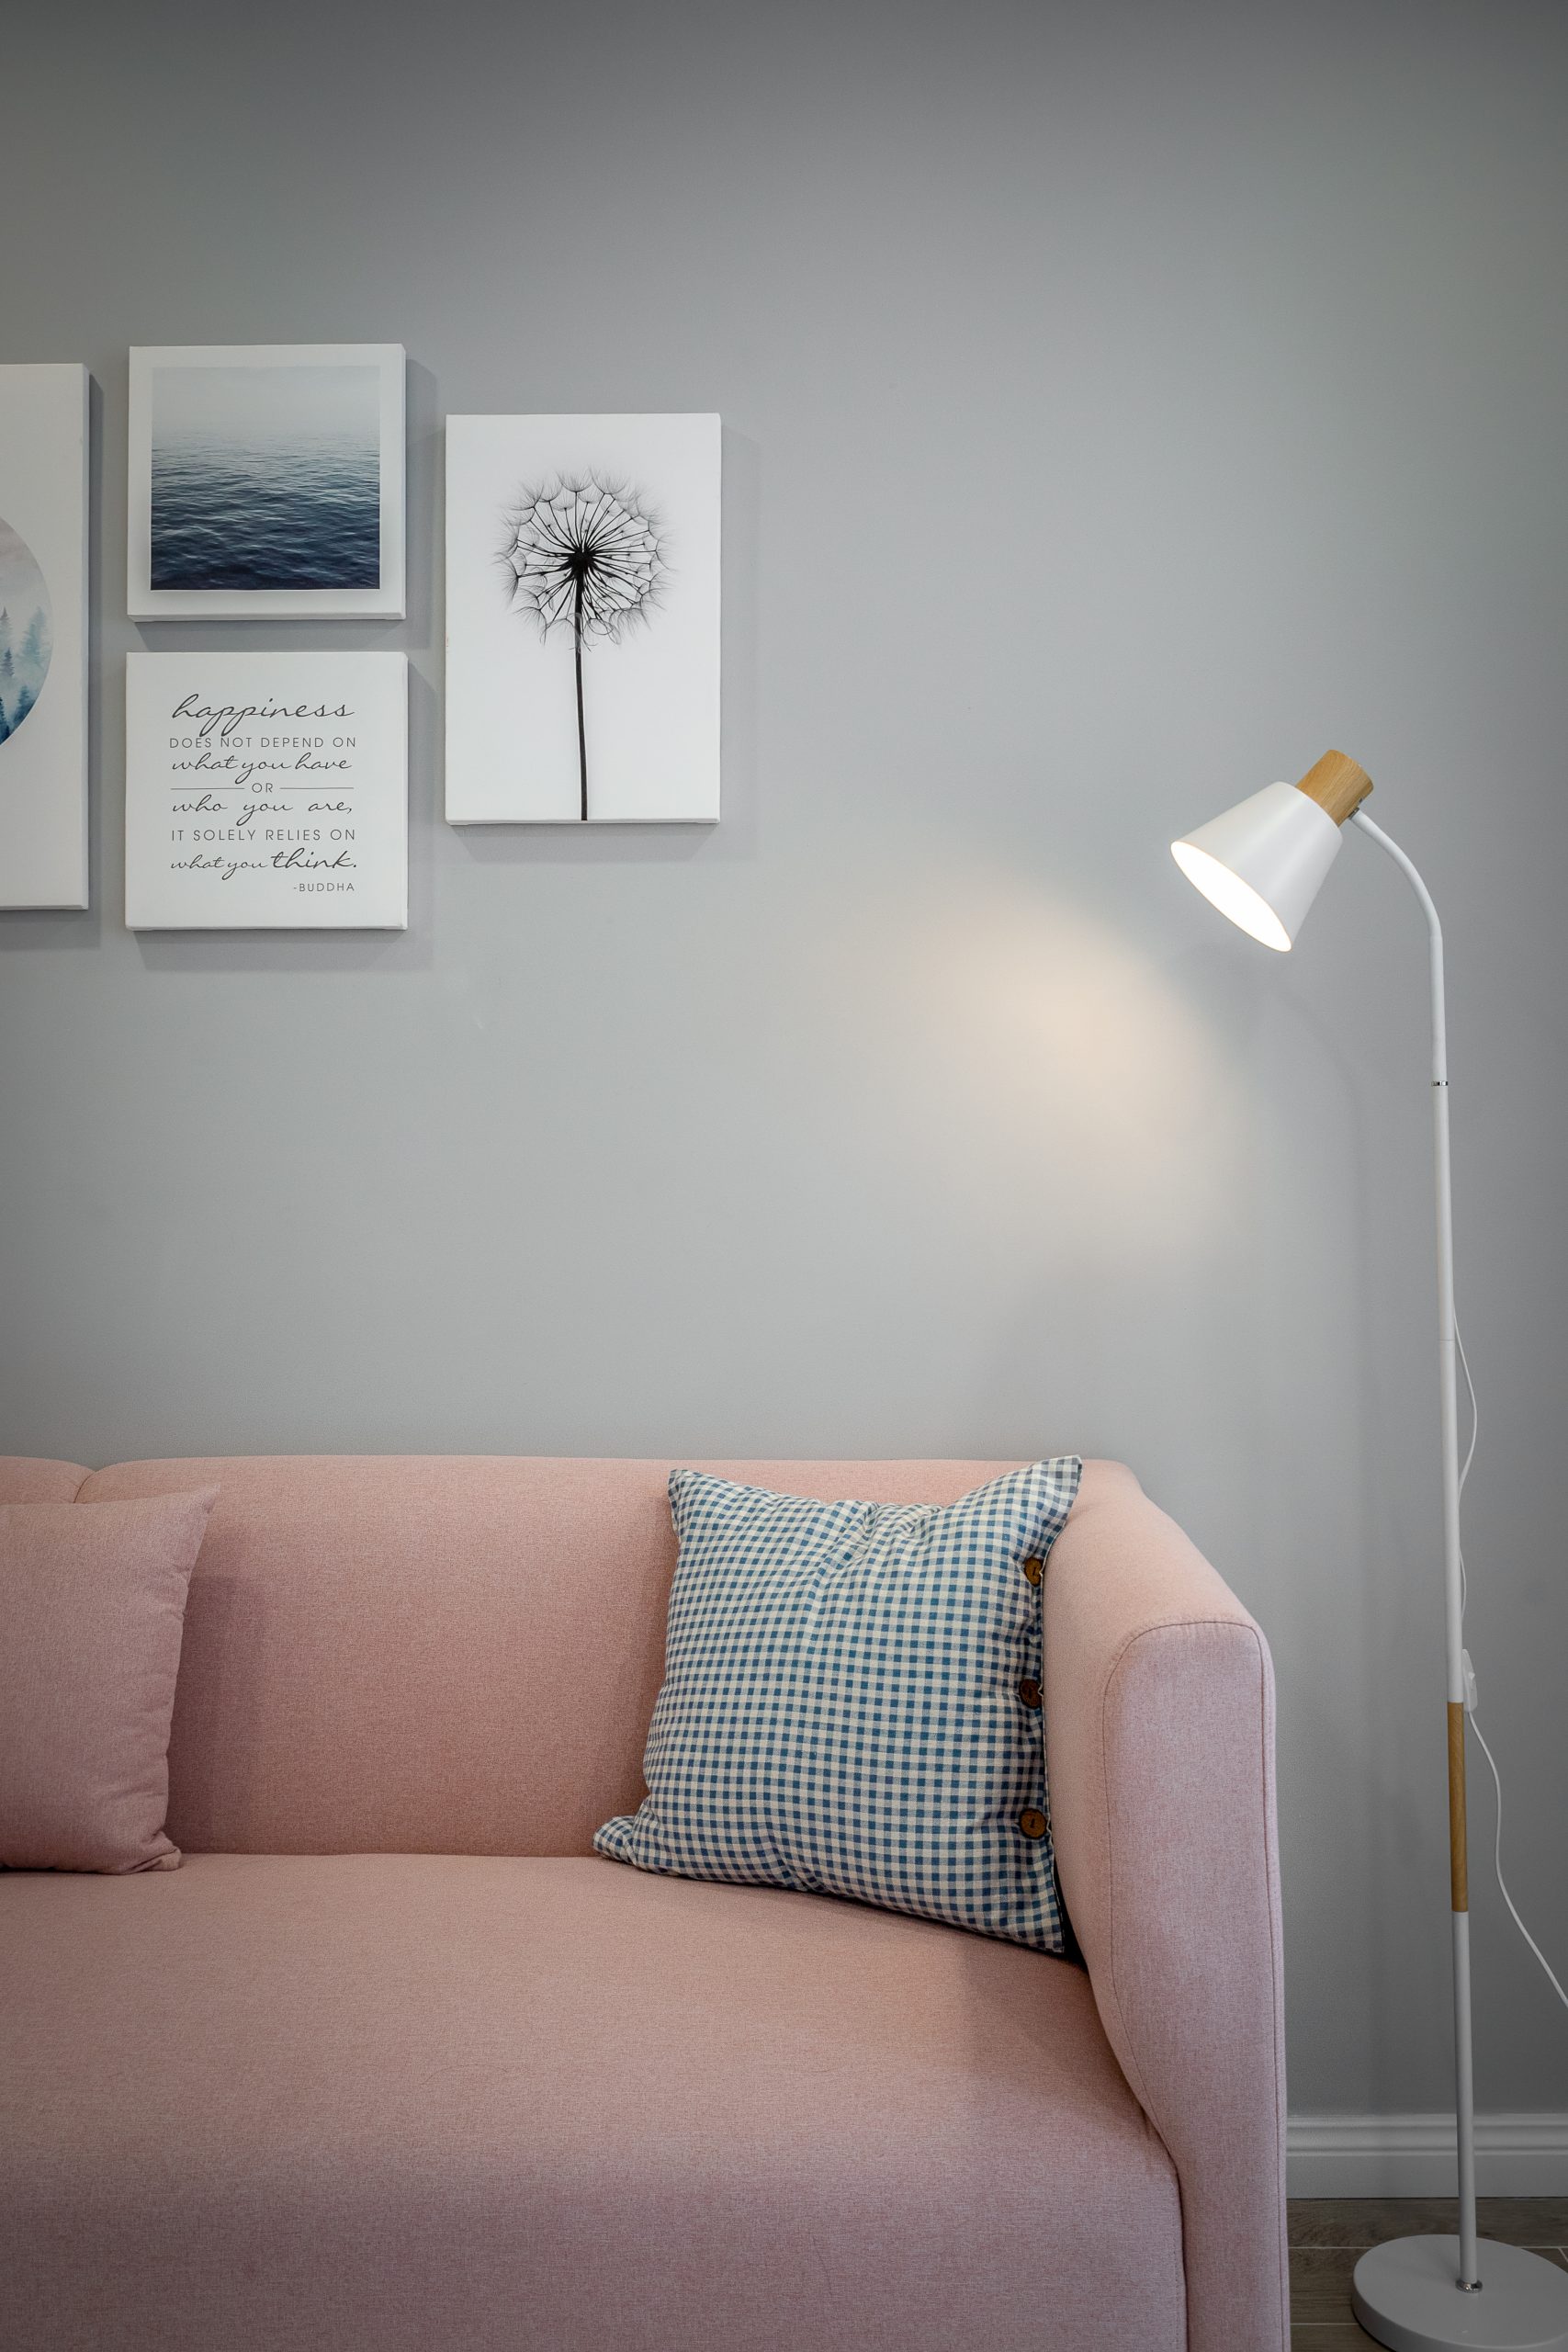 Bộ sofa sử dụng màu hồng phấn, không hề sến mà lại tạo ra cảm giác ấm áp